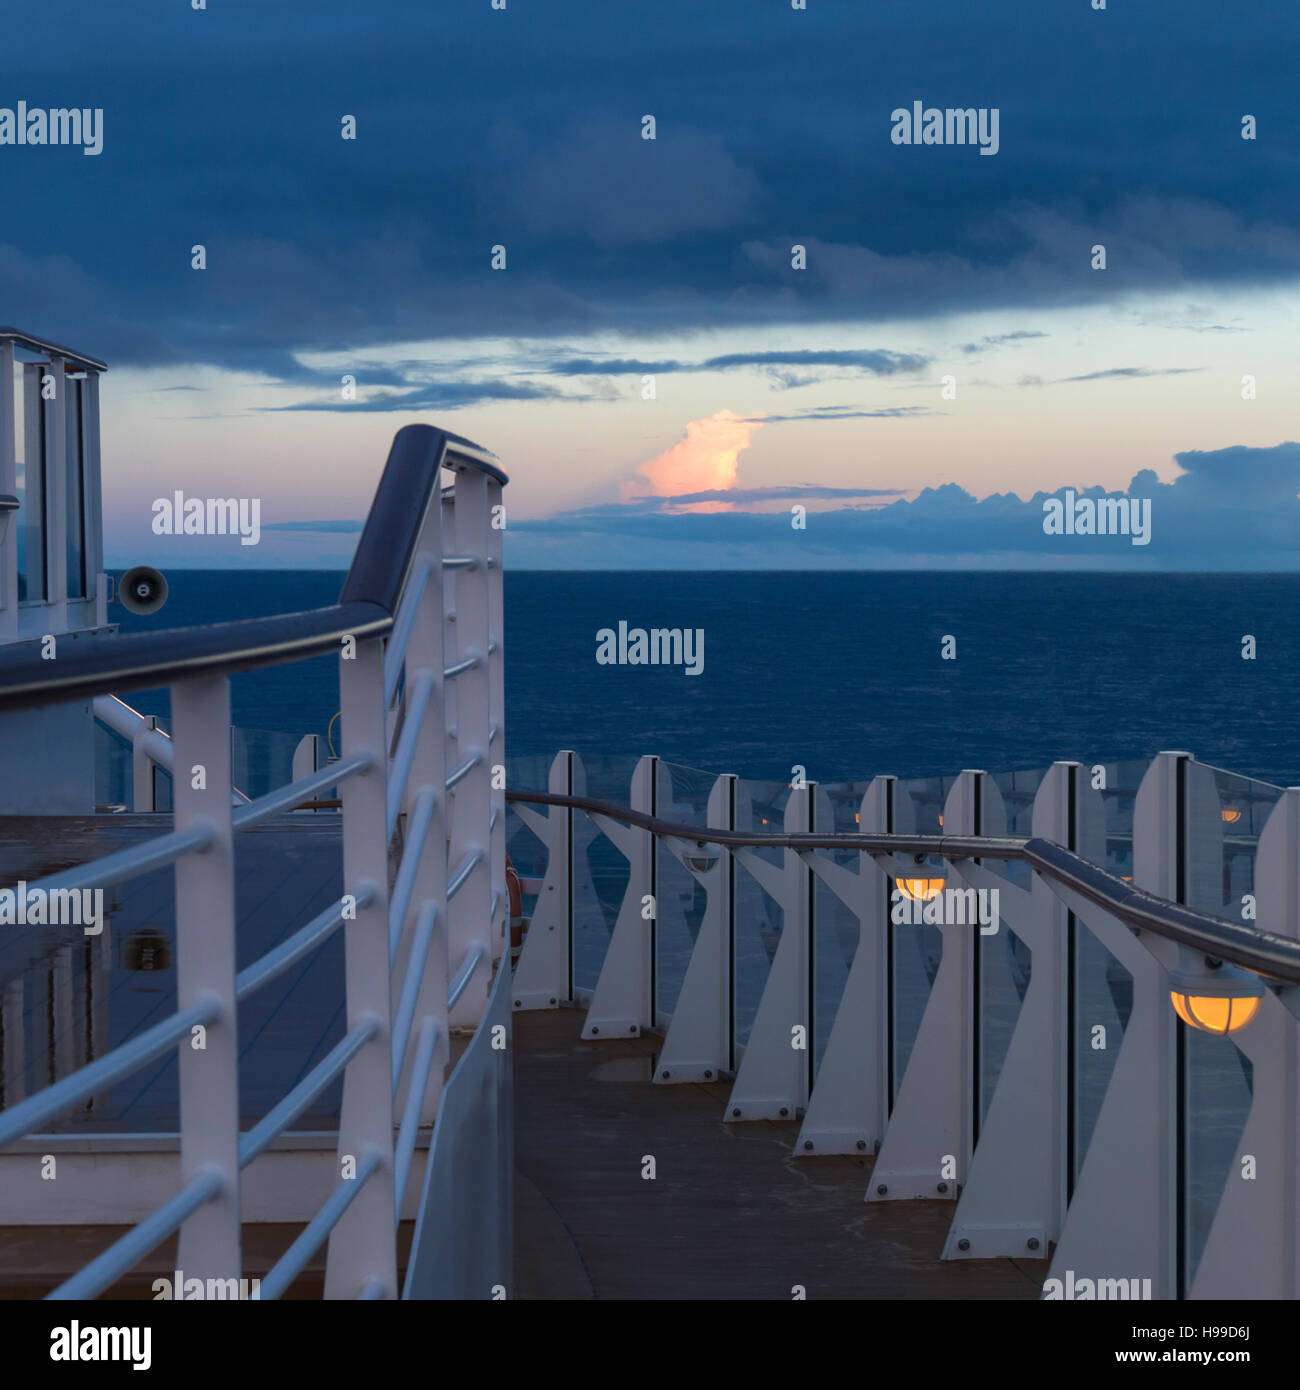 Am frühen Morgen auf dem oberen Deck eines Kreuzfahrtschiffes zur blauen Stunde vor Sonnenaufgang mit einem nassen Deck und stürmischen Himmel Stockfoto